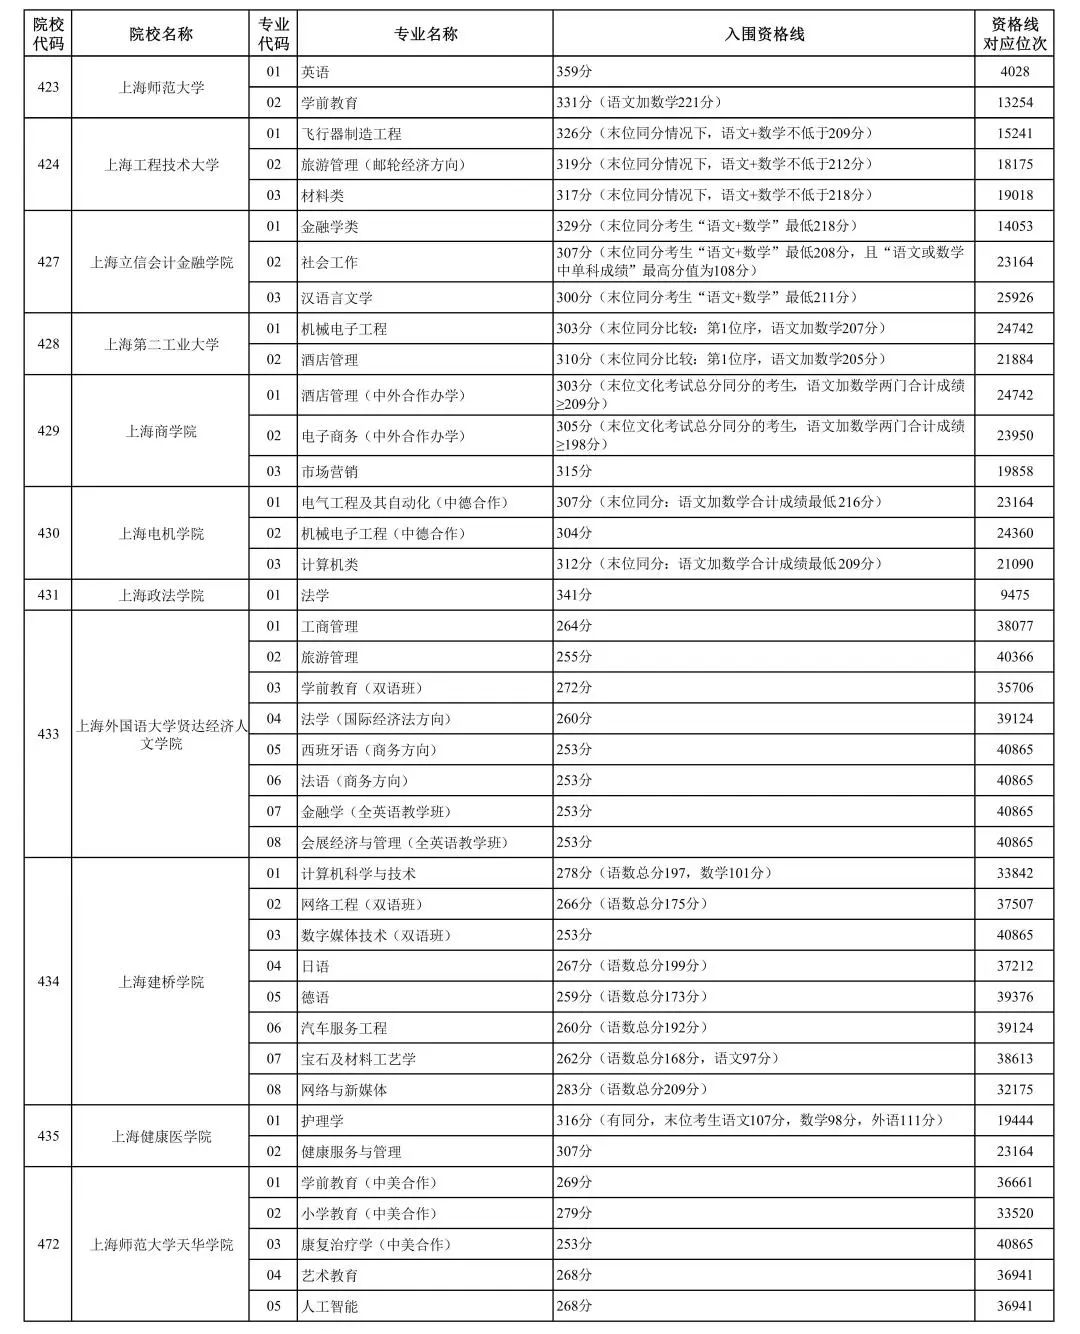 2023上海春季高考各校招生专业自主测试资格线